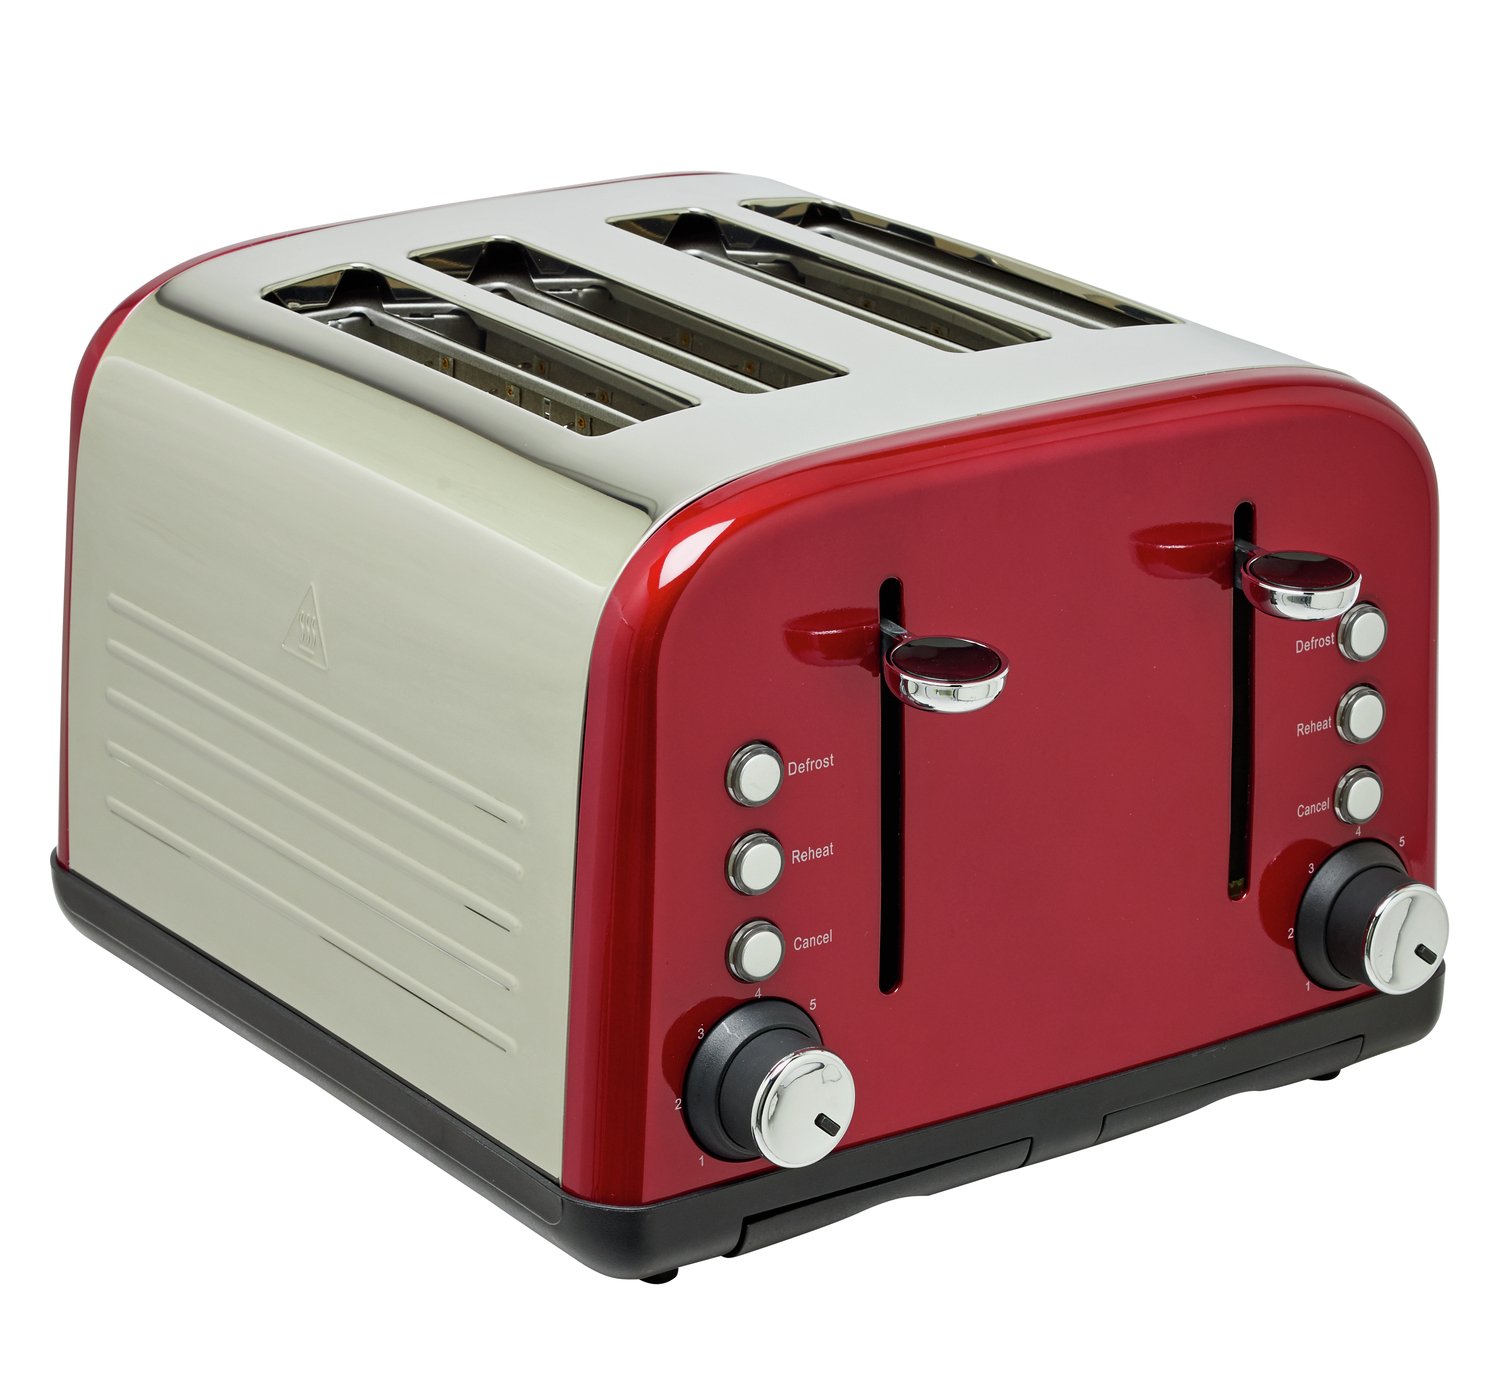 Cookworks 4 Slice Toaster - Red